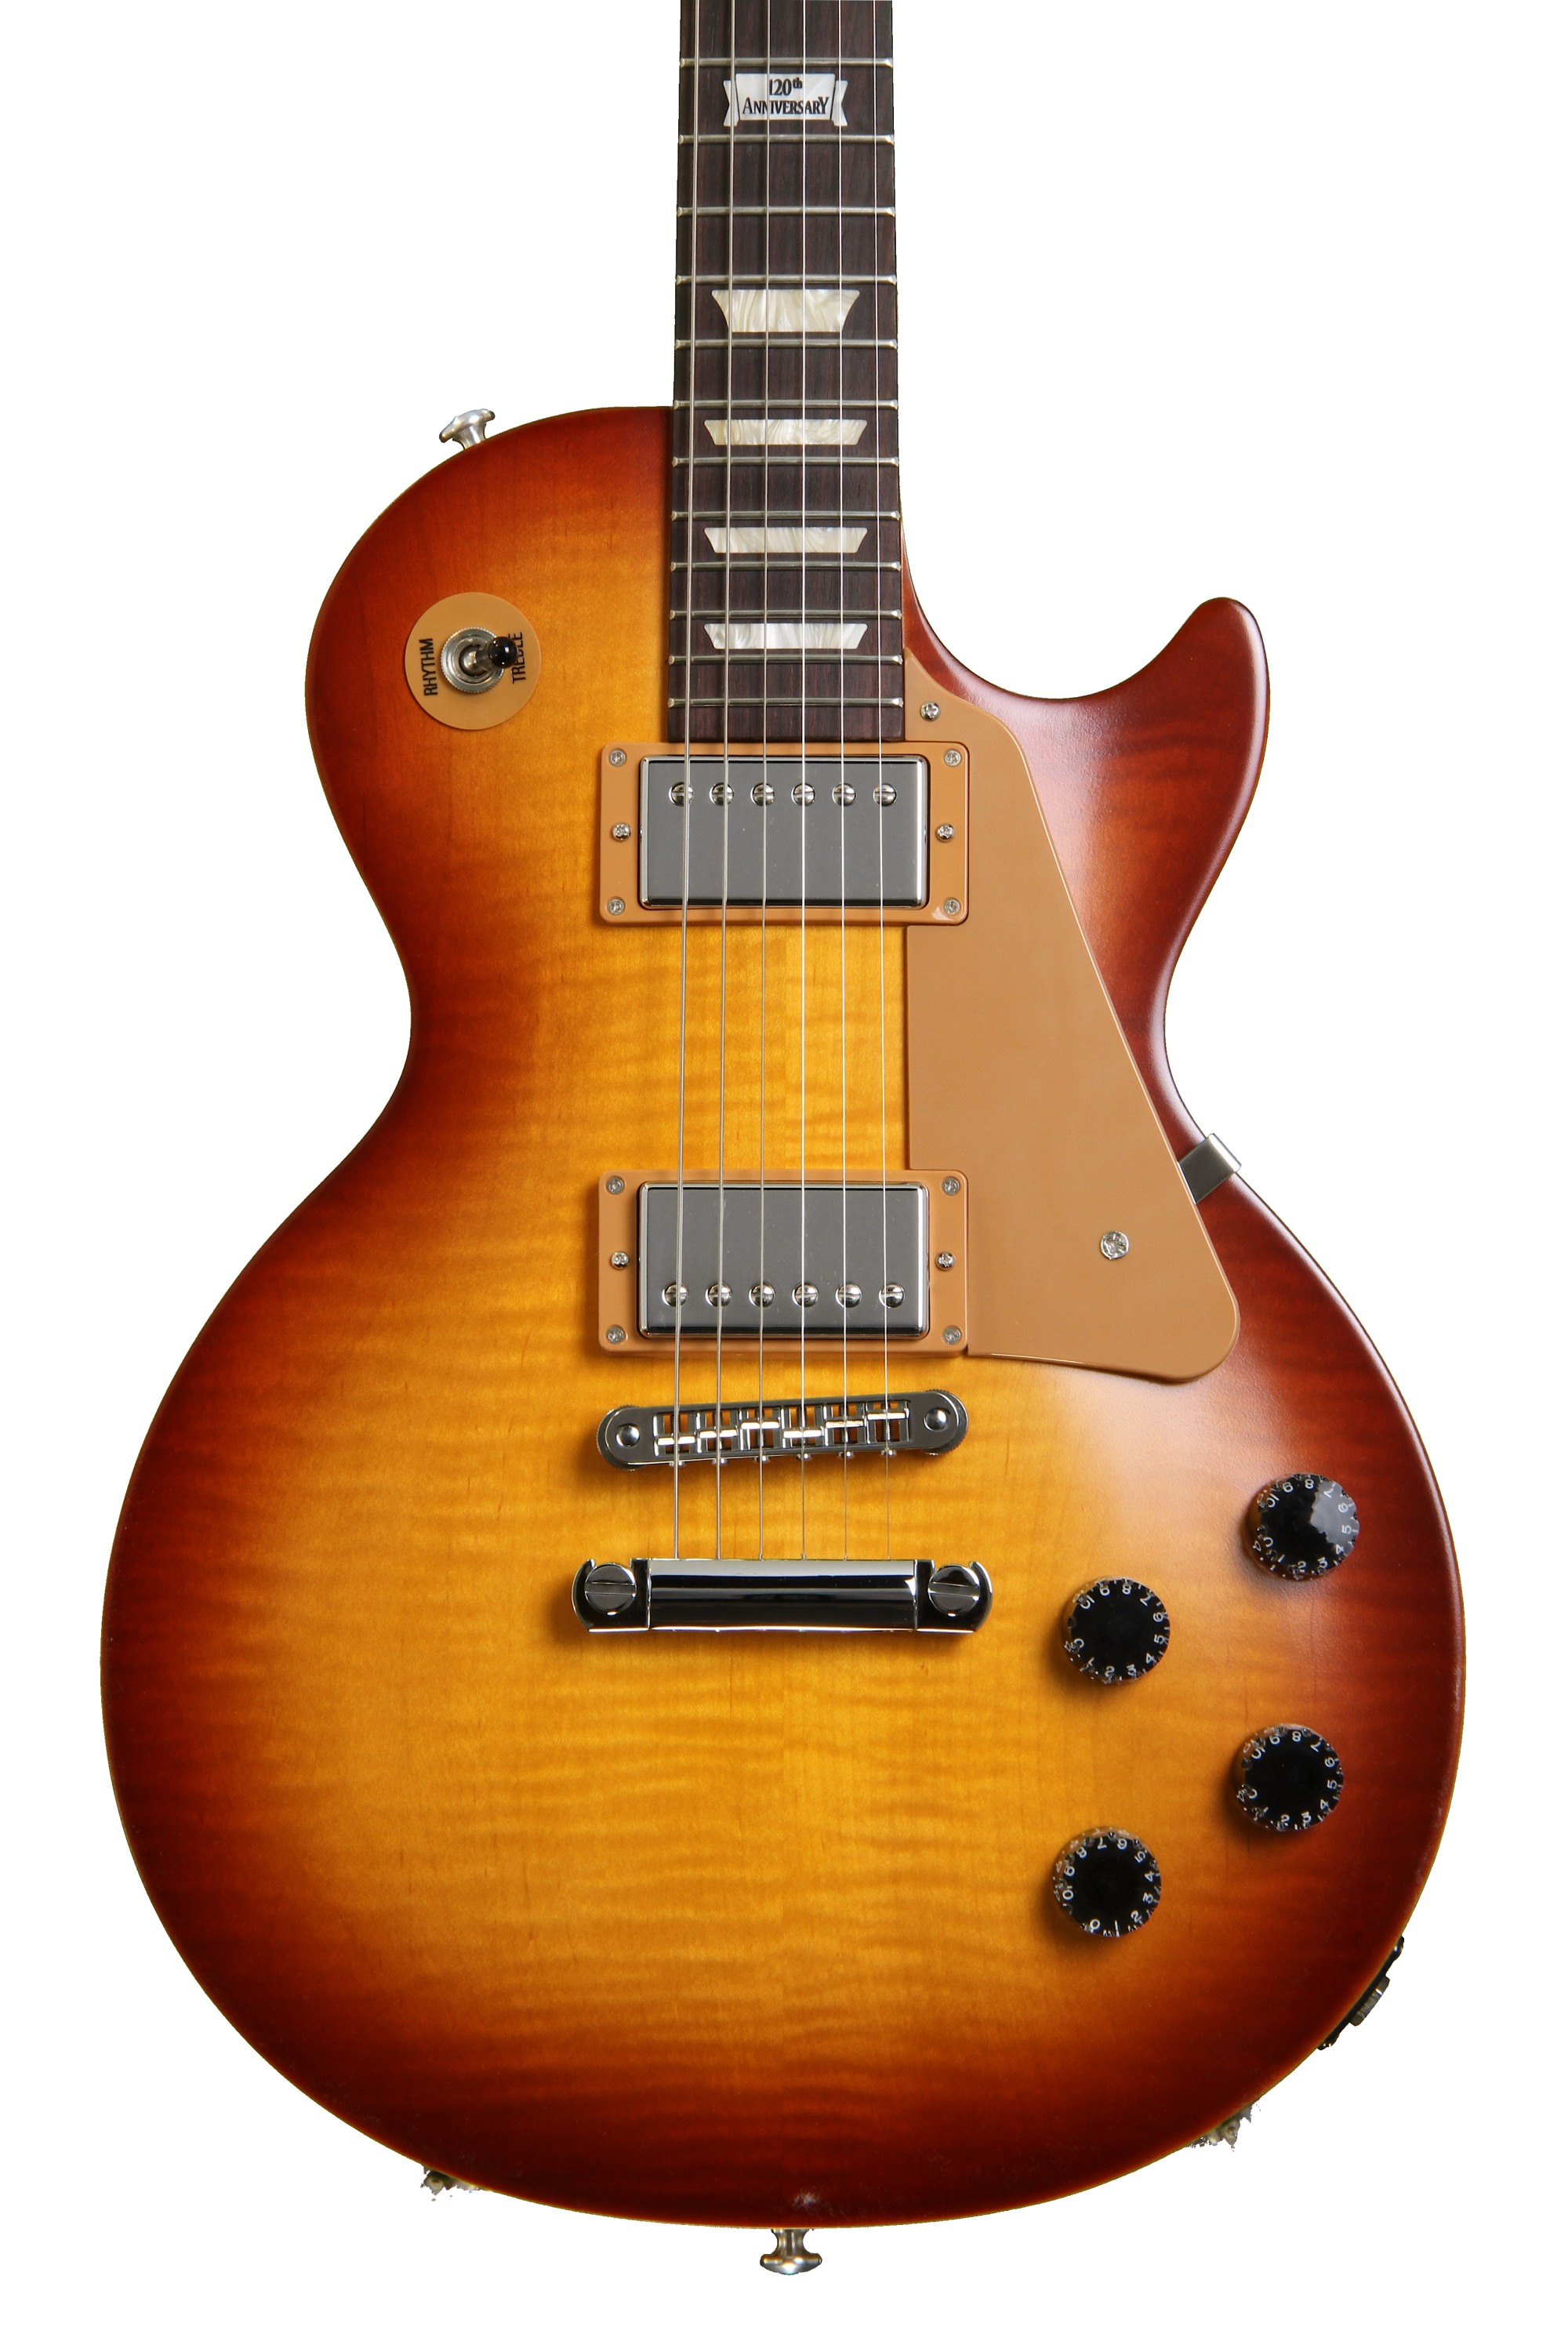 特価限定品[超美品] Gibson Les Paul Studio 2018 約3.6キロの軽量ボディ / 多彩なサウンドメイク 2018年製 [QI665] ギブソン